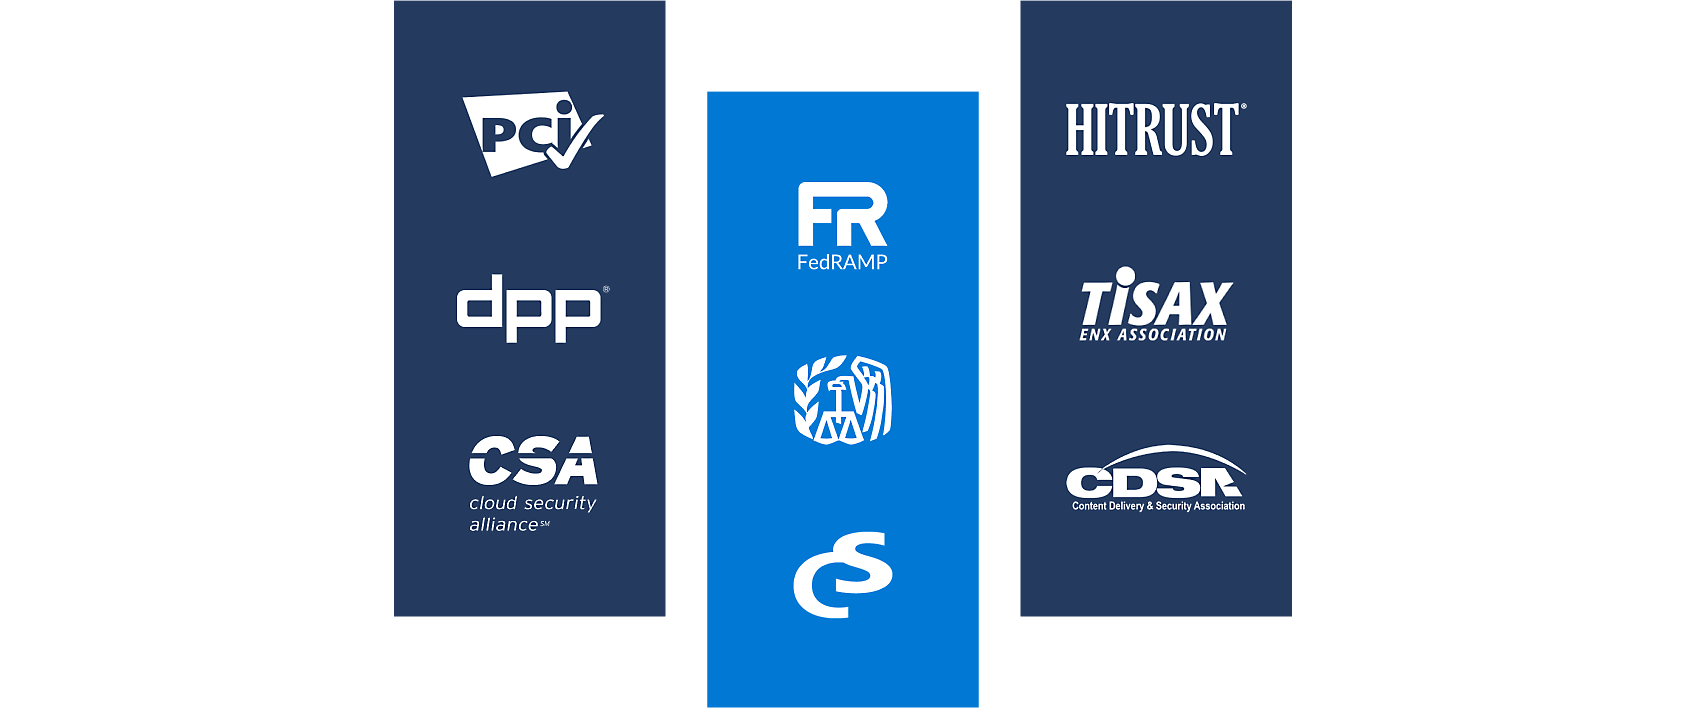 Logos von PCI, Cloud Security Alliance, FedRAMP, HITRUST und anderen Organisationen